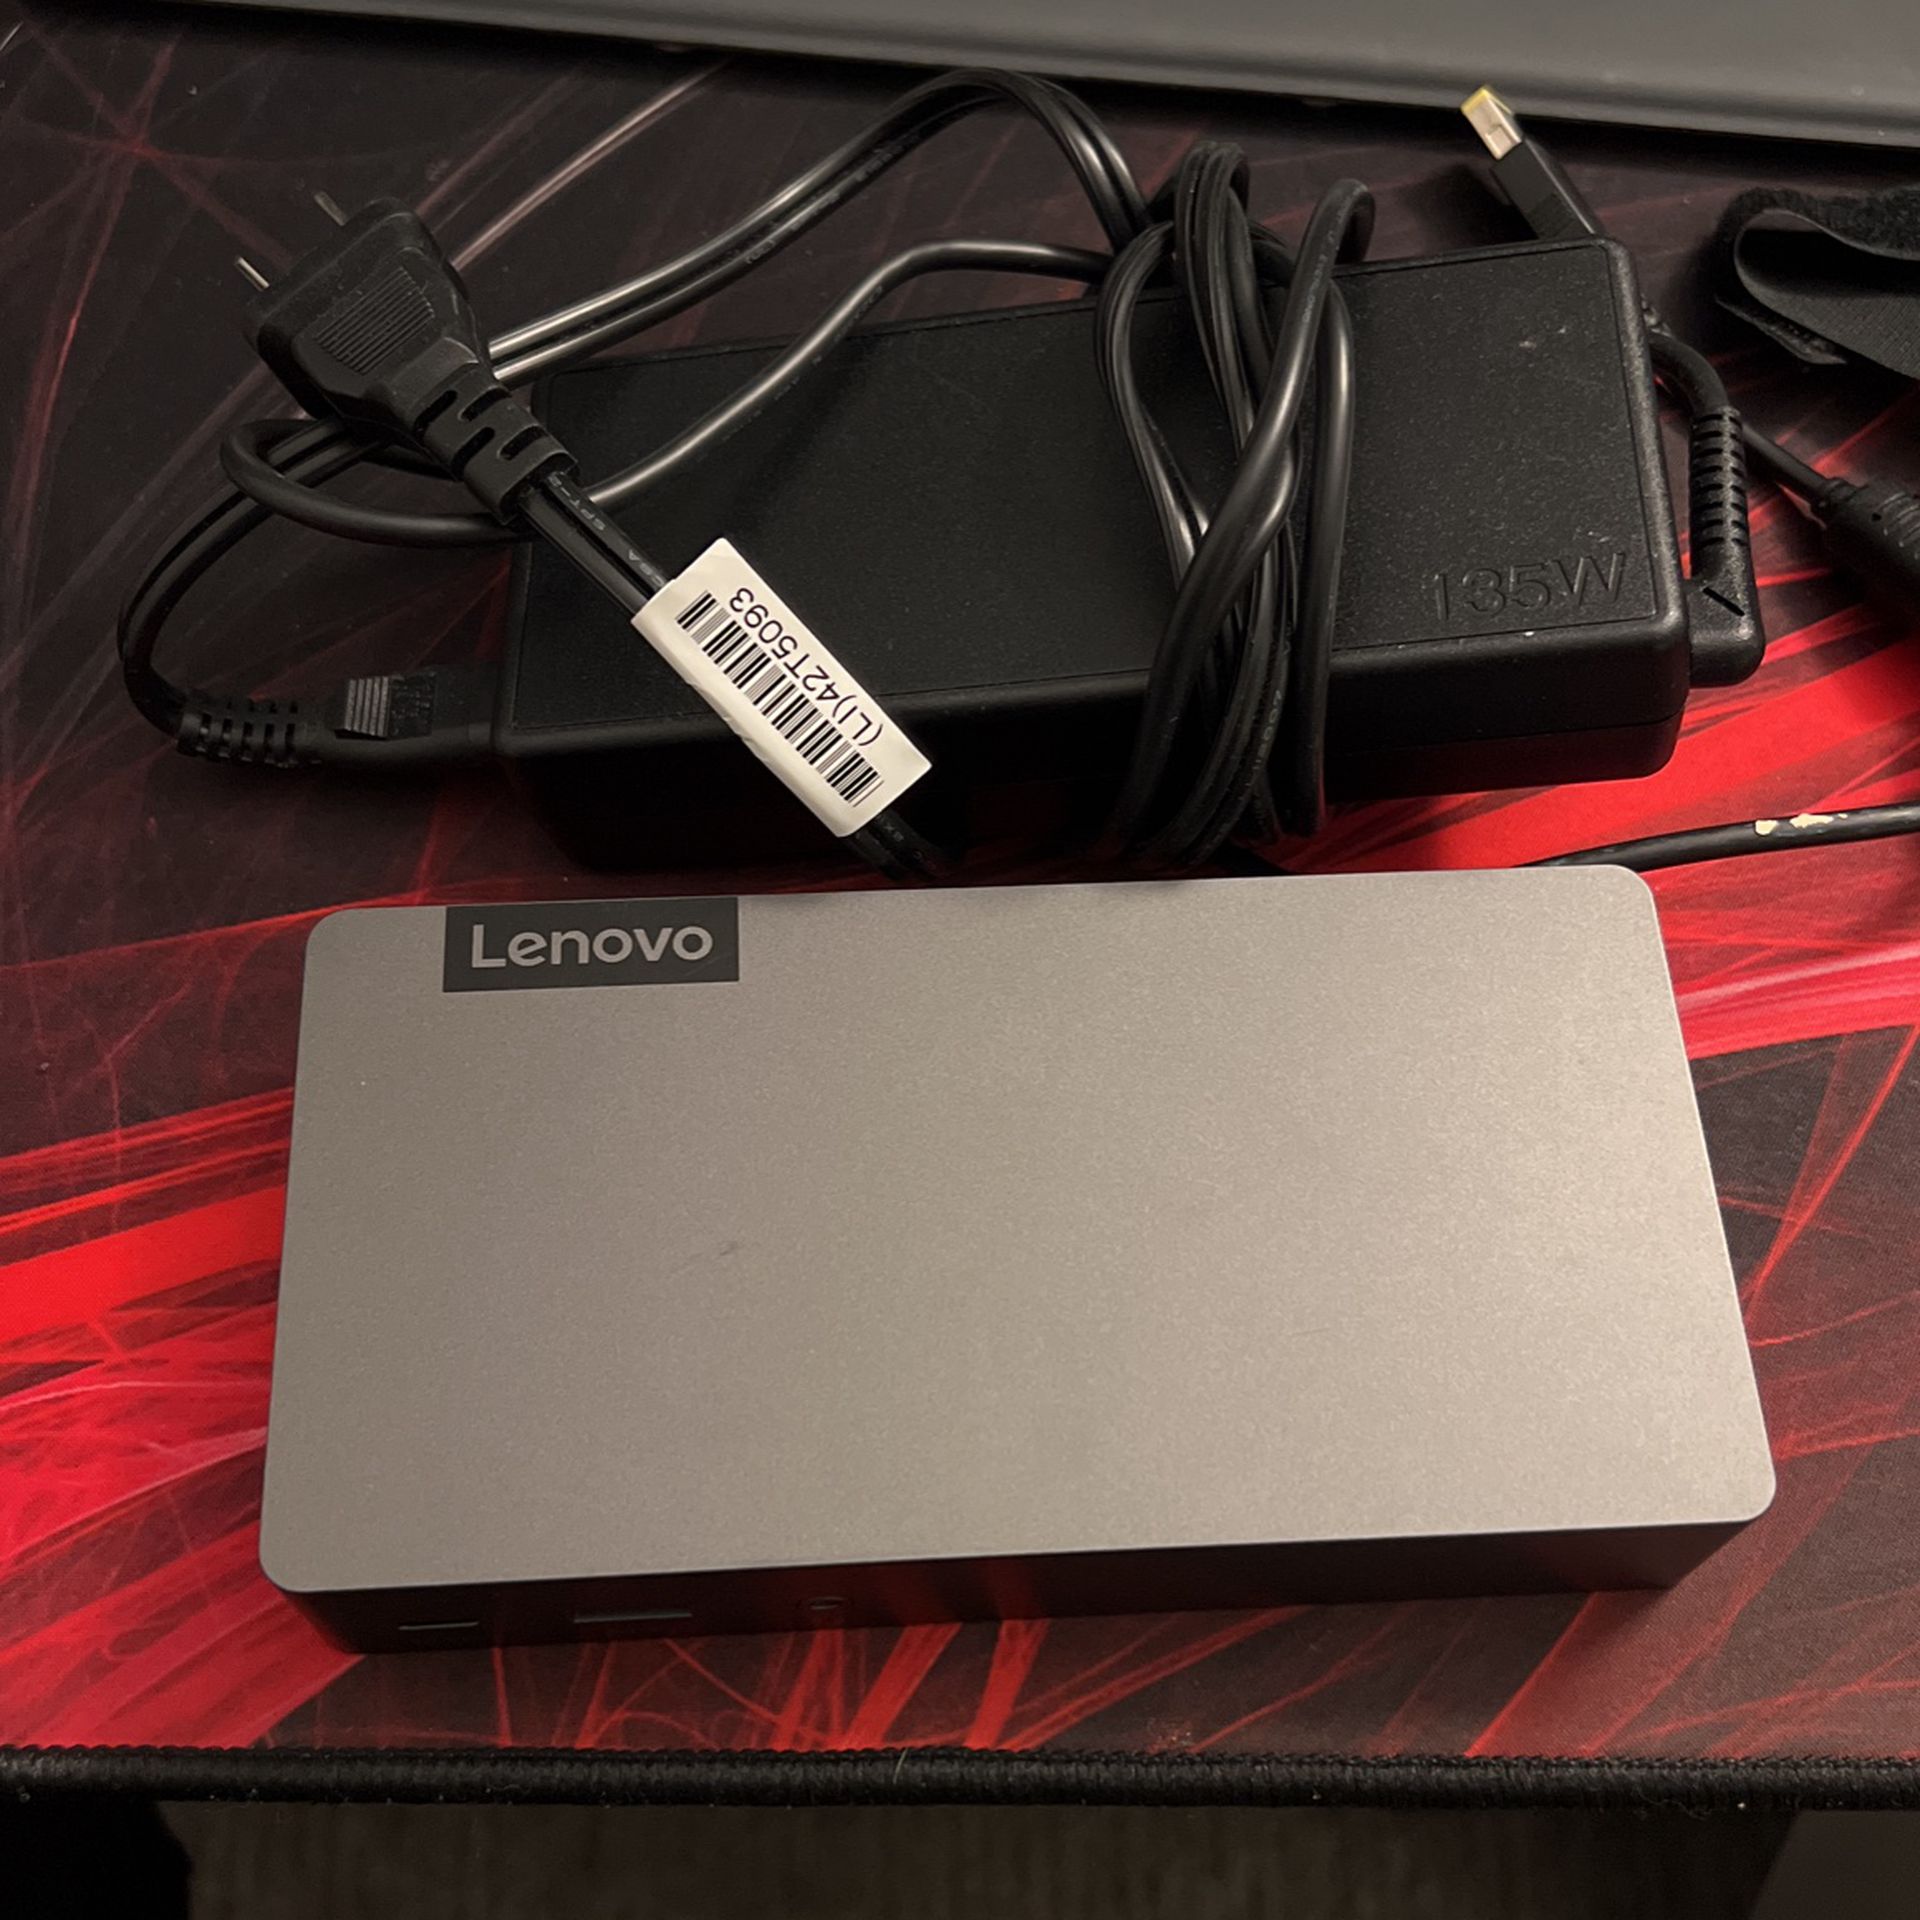 Lenovo Thunder Laptop Dock 3 